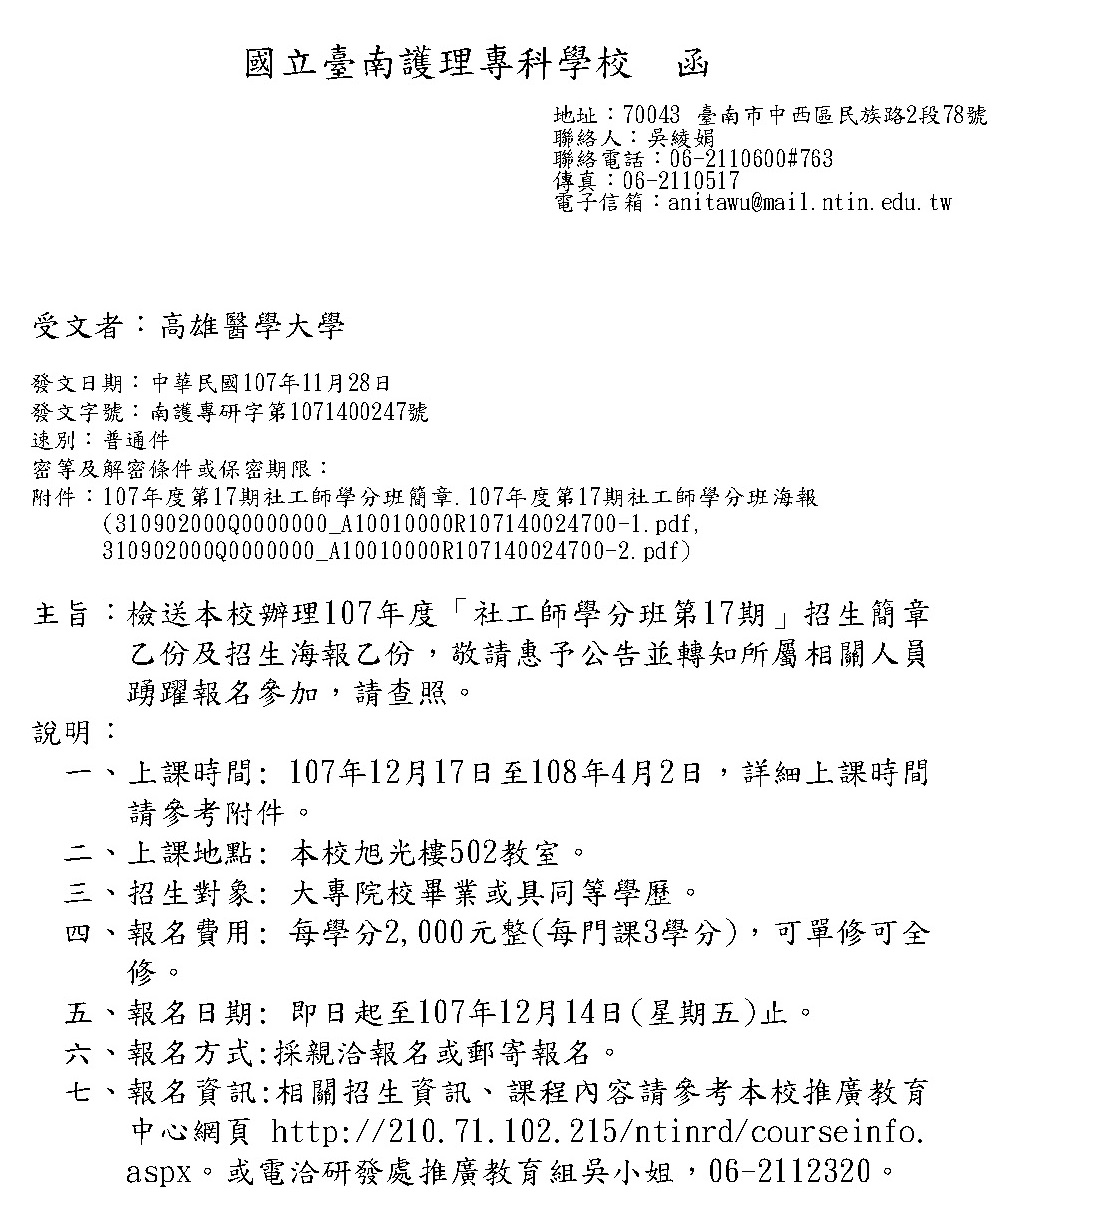 1071203國立臺南護理專科學校課程公文 頁面 1